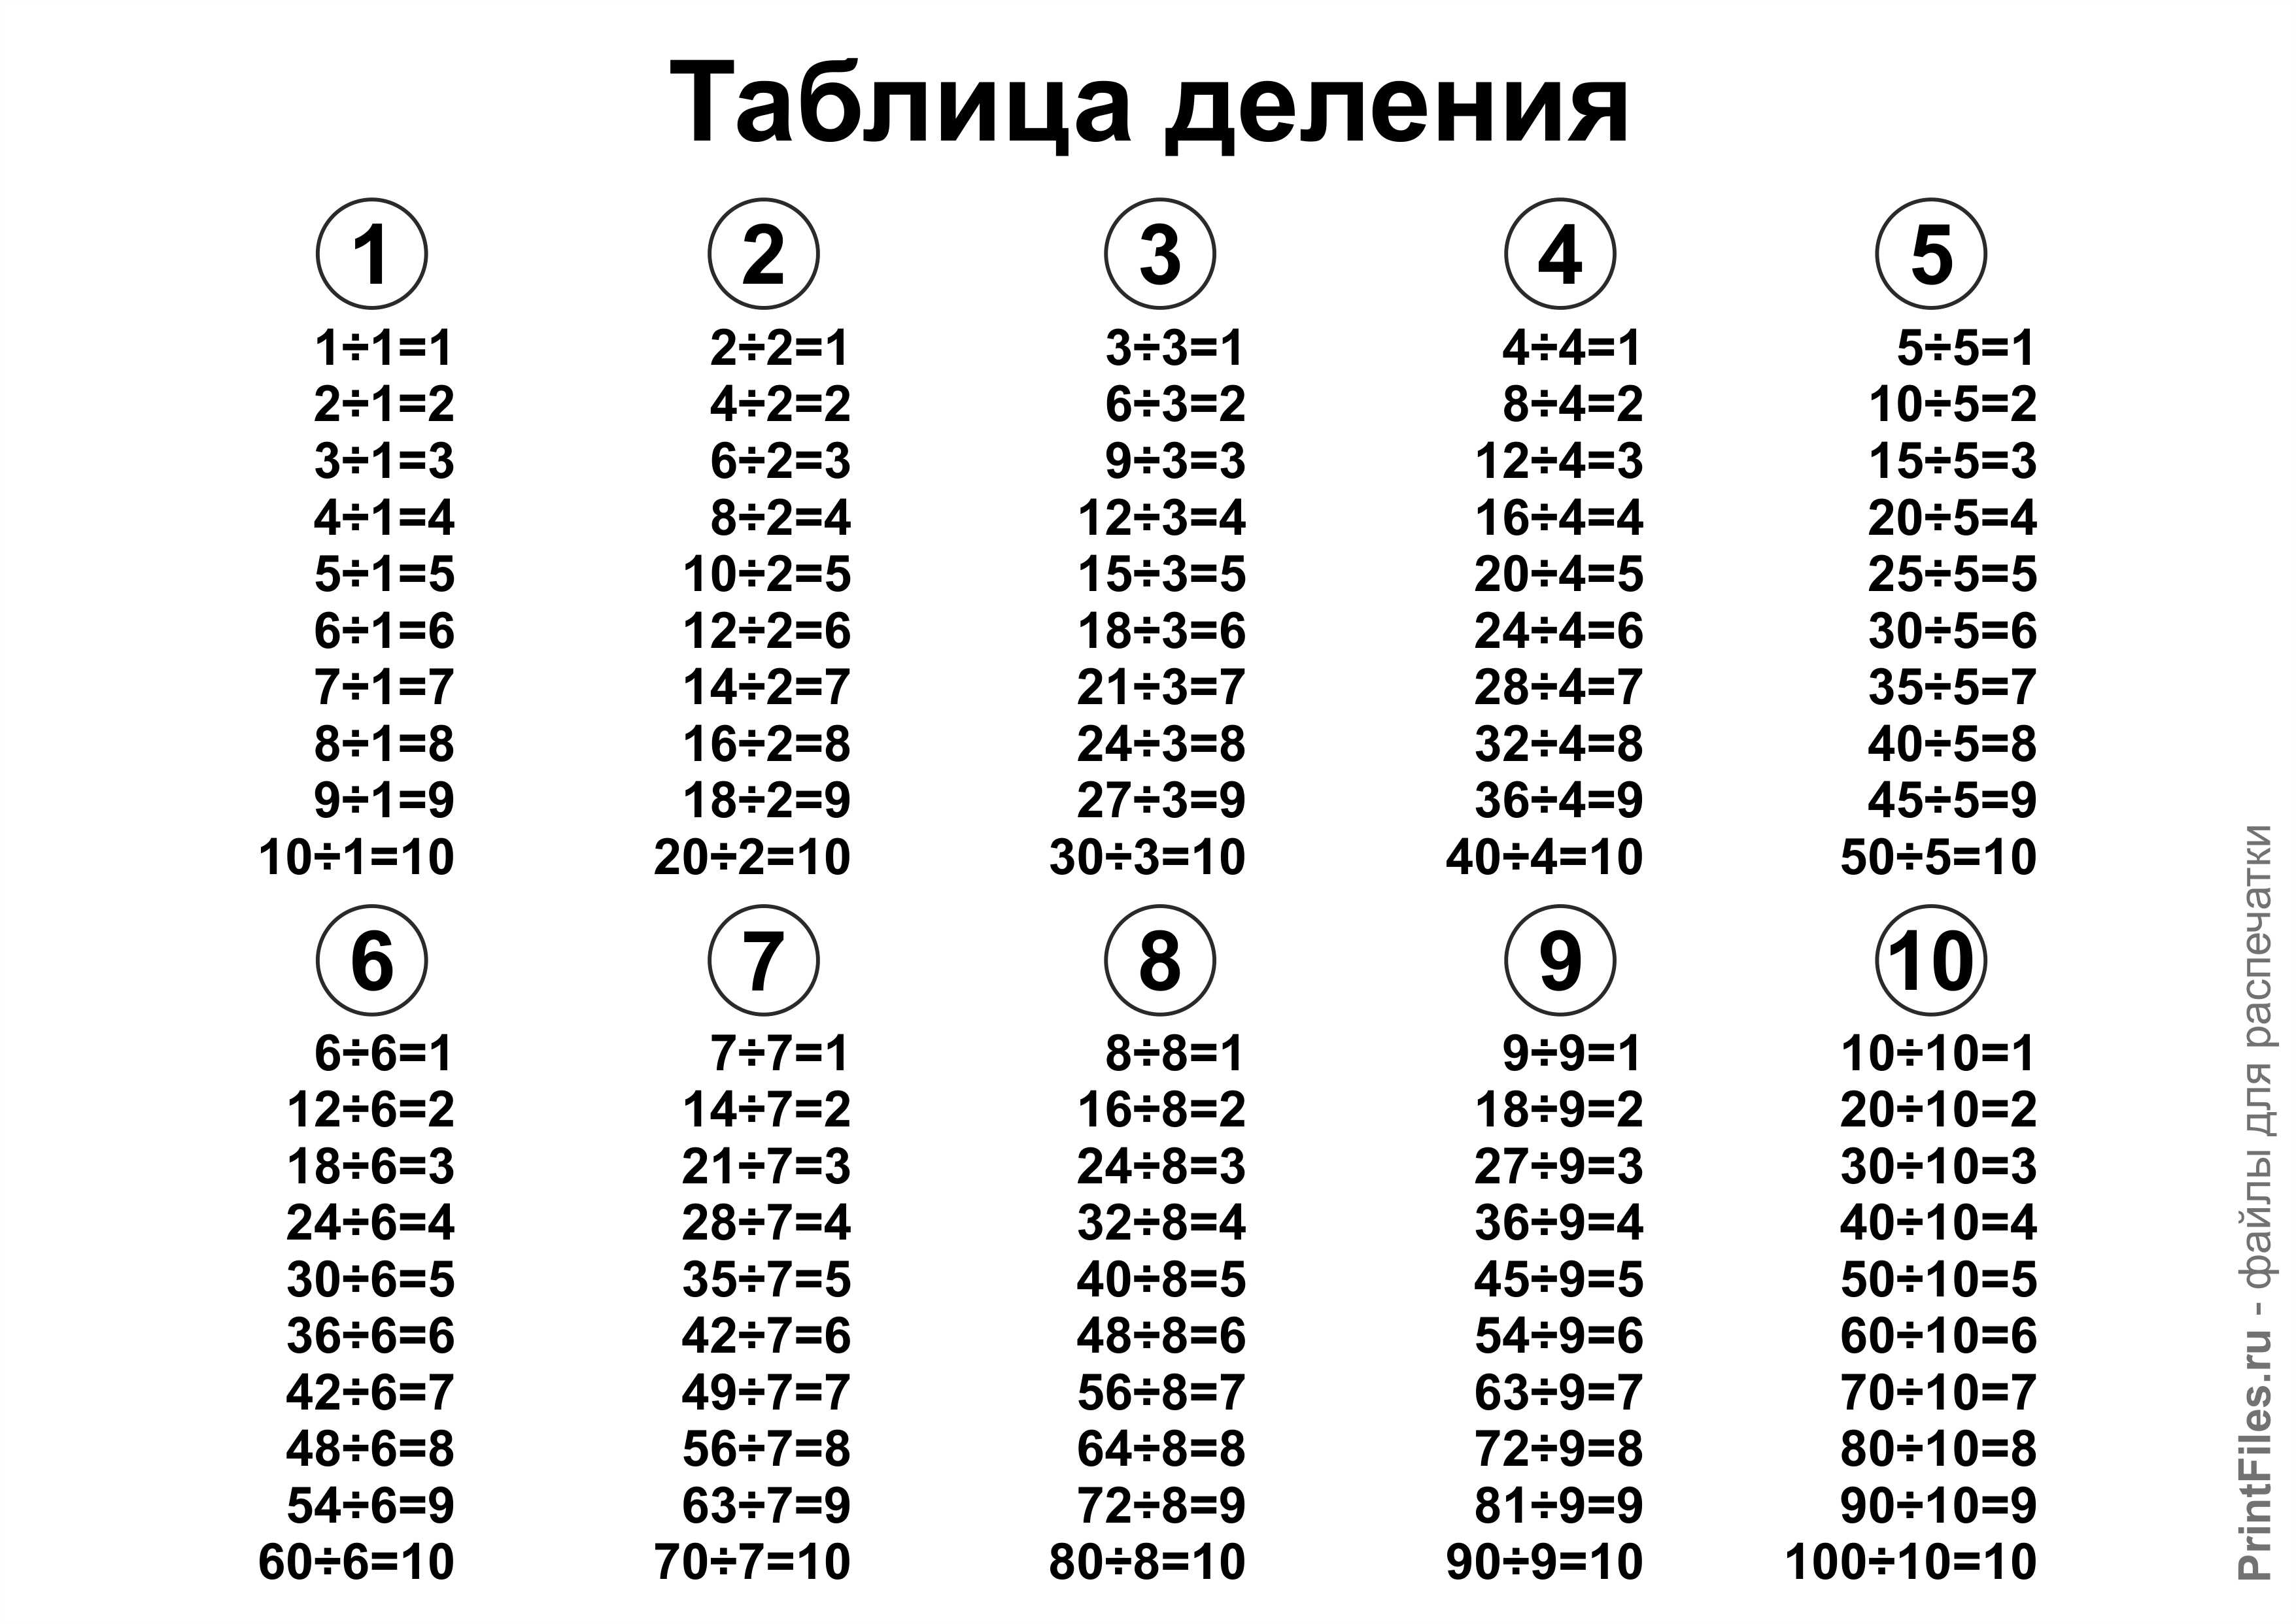 таблица деления от 1 до 10 распечатать